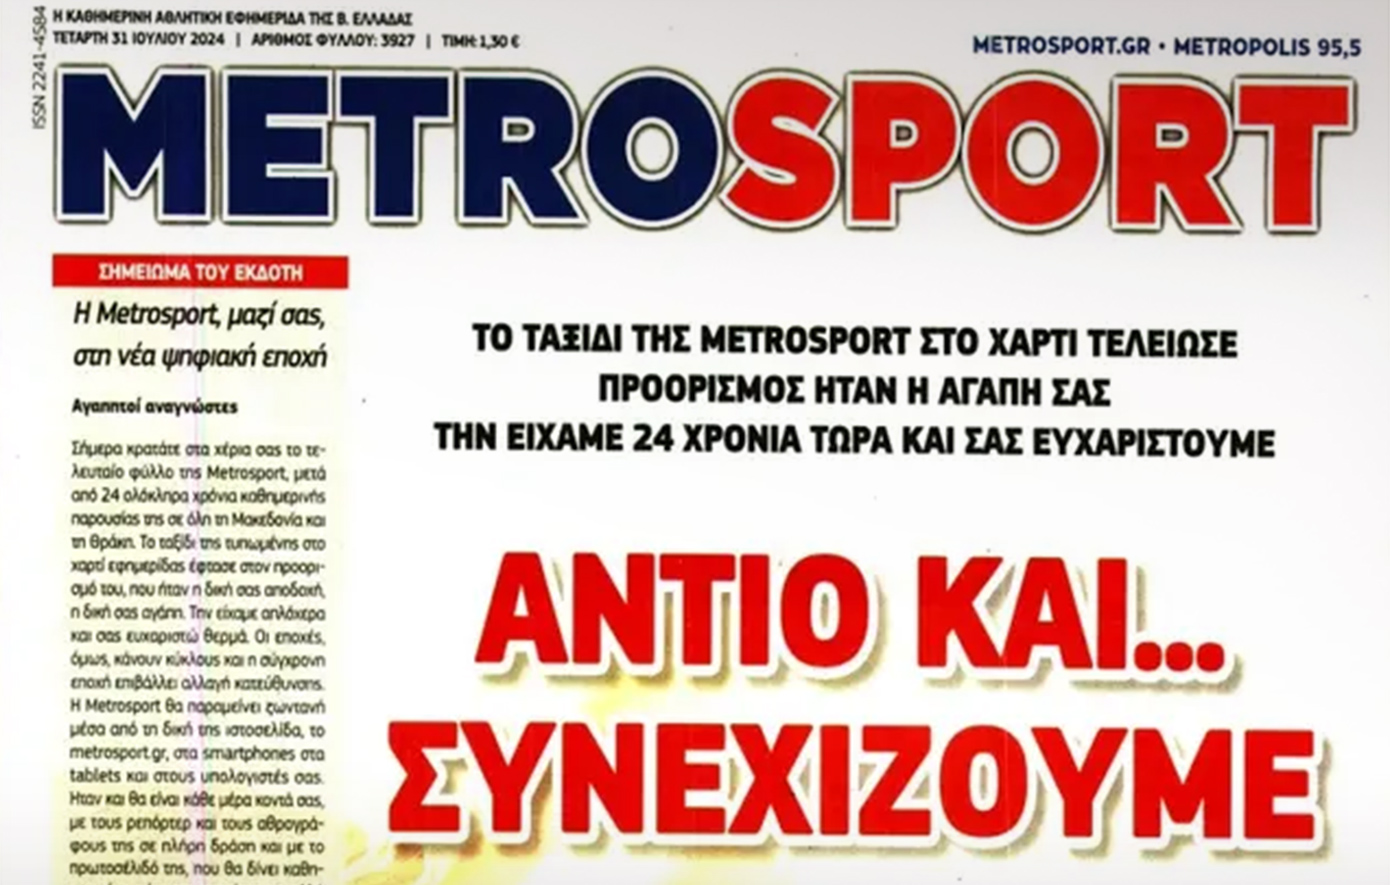 Τέλος εποχής για την εφημερίδα Metrosport: Τι έγραψε στο τελευταίο φύλλο της